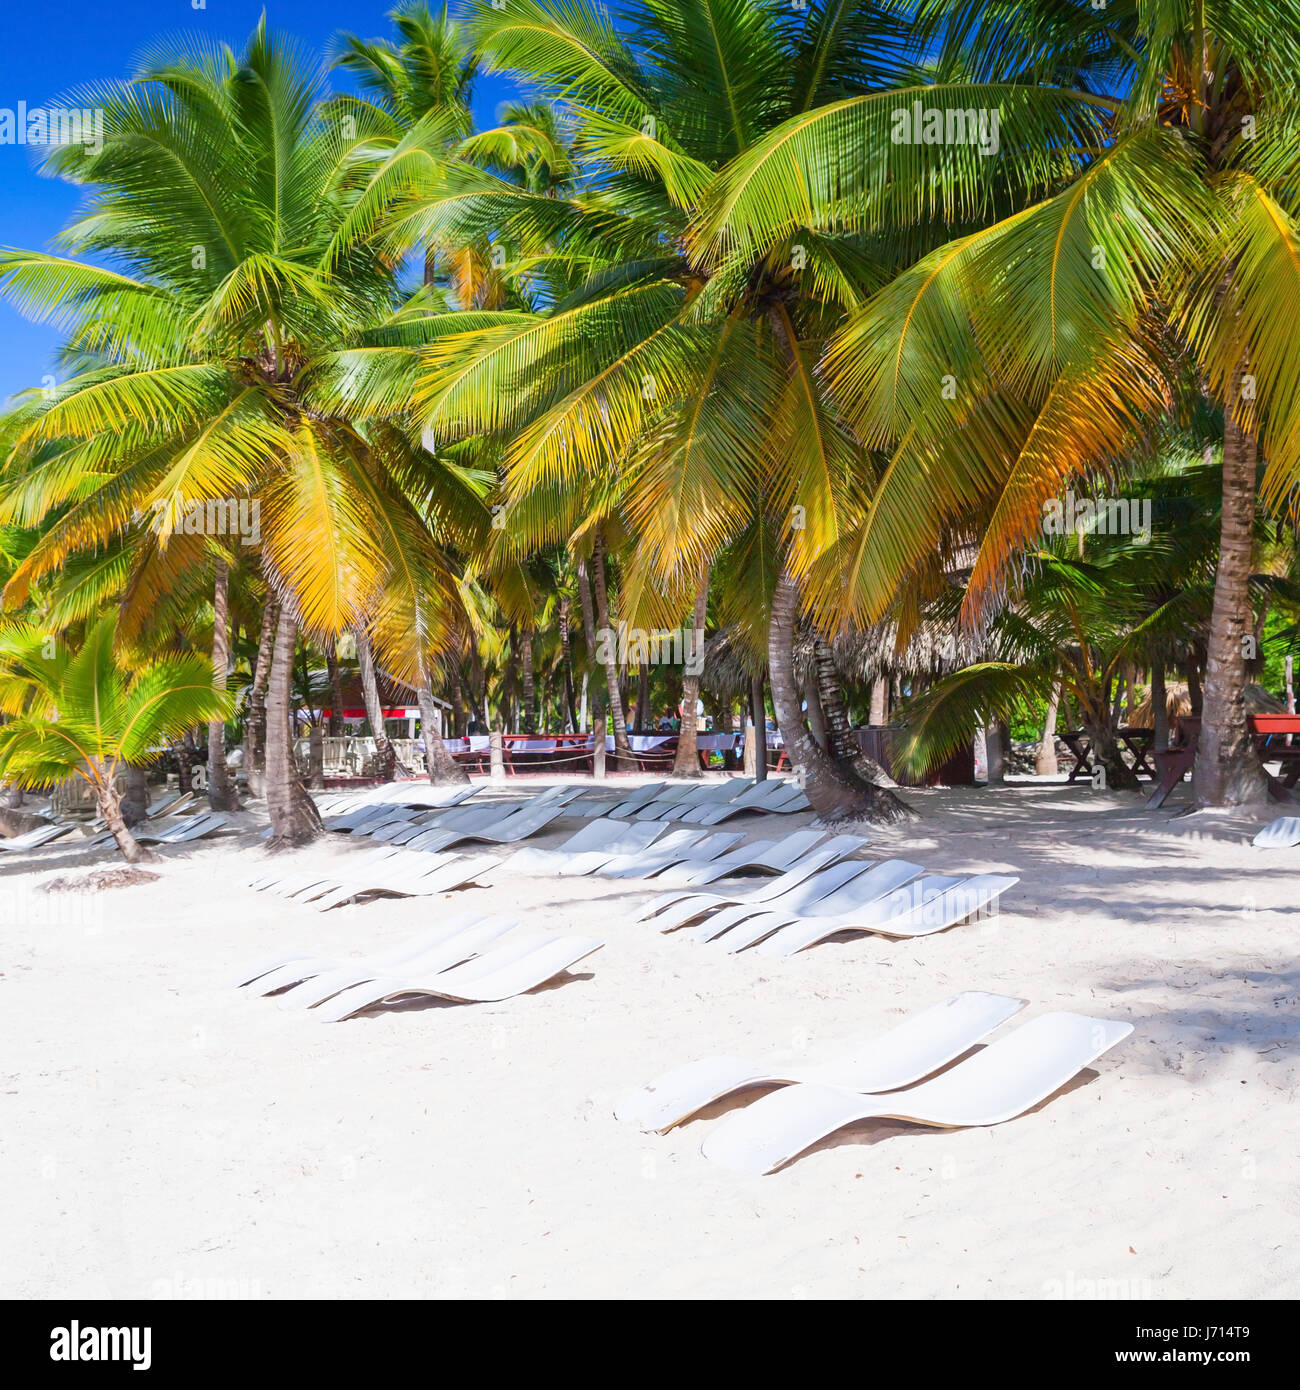 Las palmas de coco, tumbonas vacías están sobre la playa de arena blanca. Mar Caribe, República Dominicana Isla Saona Costa, complejo turístico Foto de stock